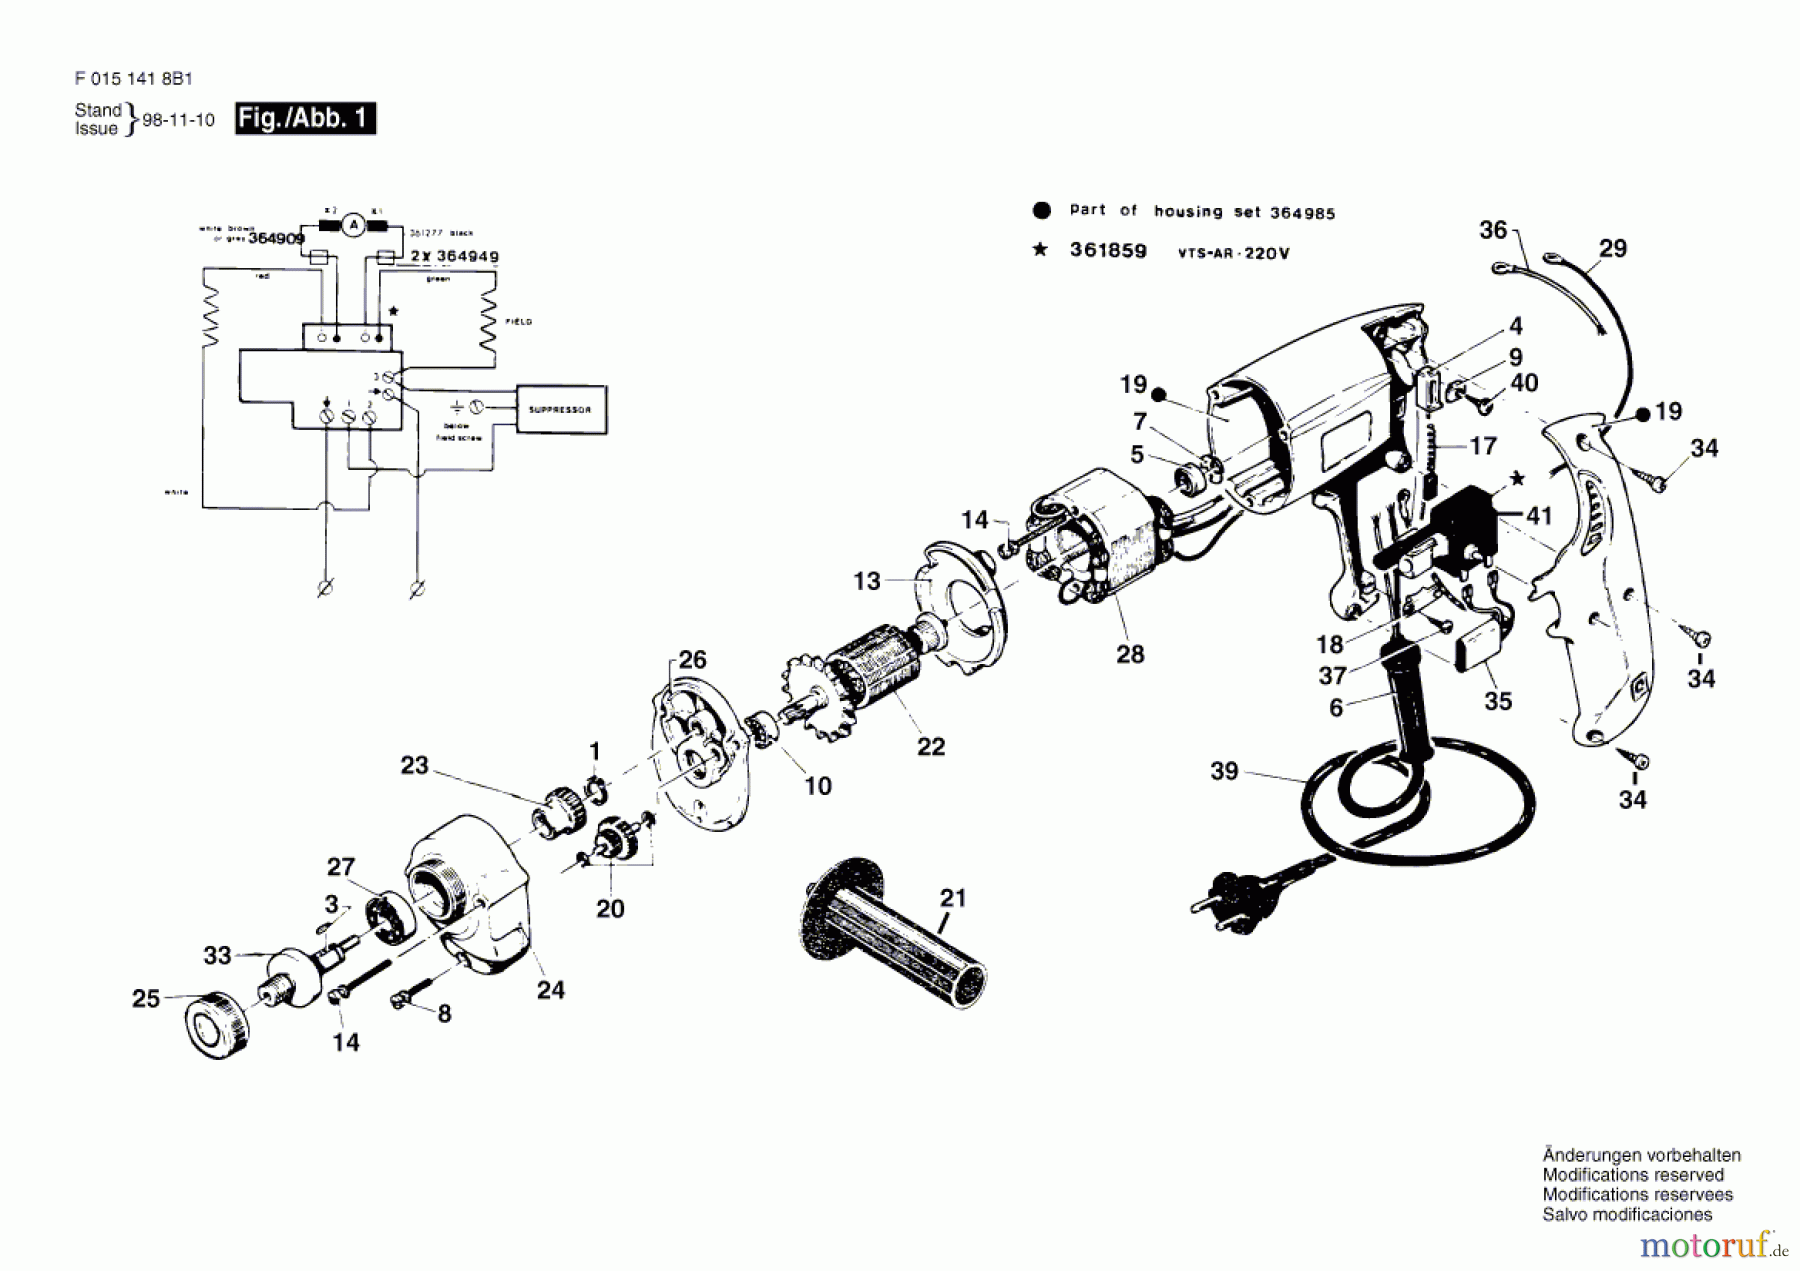  Bosch Werkzeug Bohrmaschine 1418H1 Seite 1